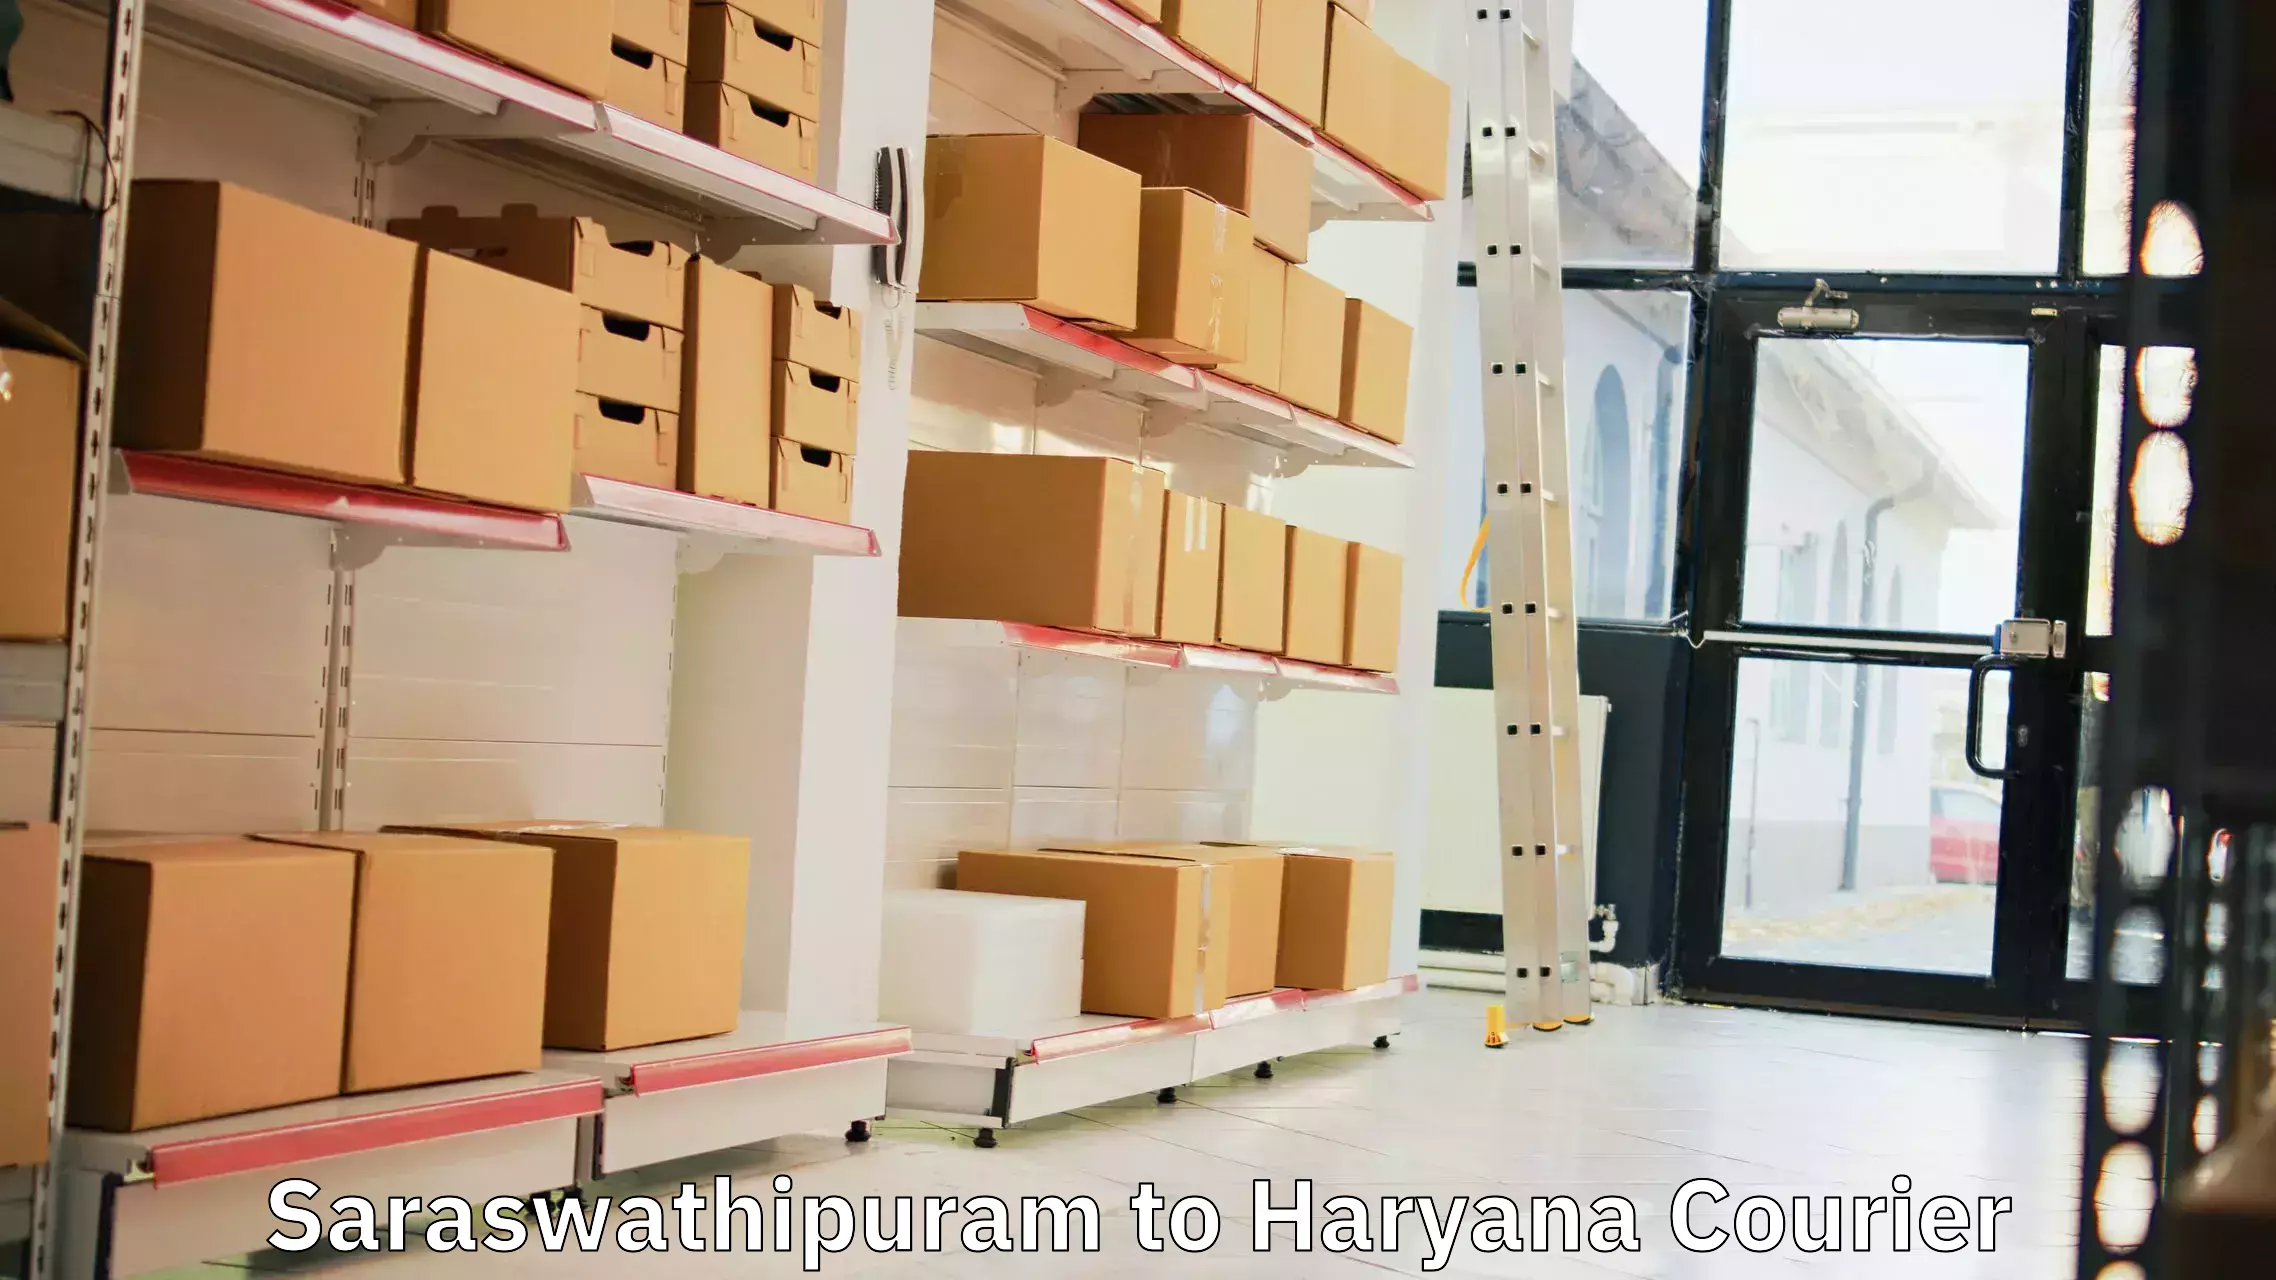 Premium delivery services Saraswathipuram to Haryana